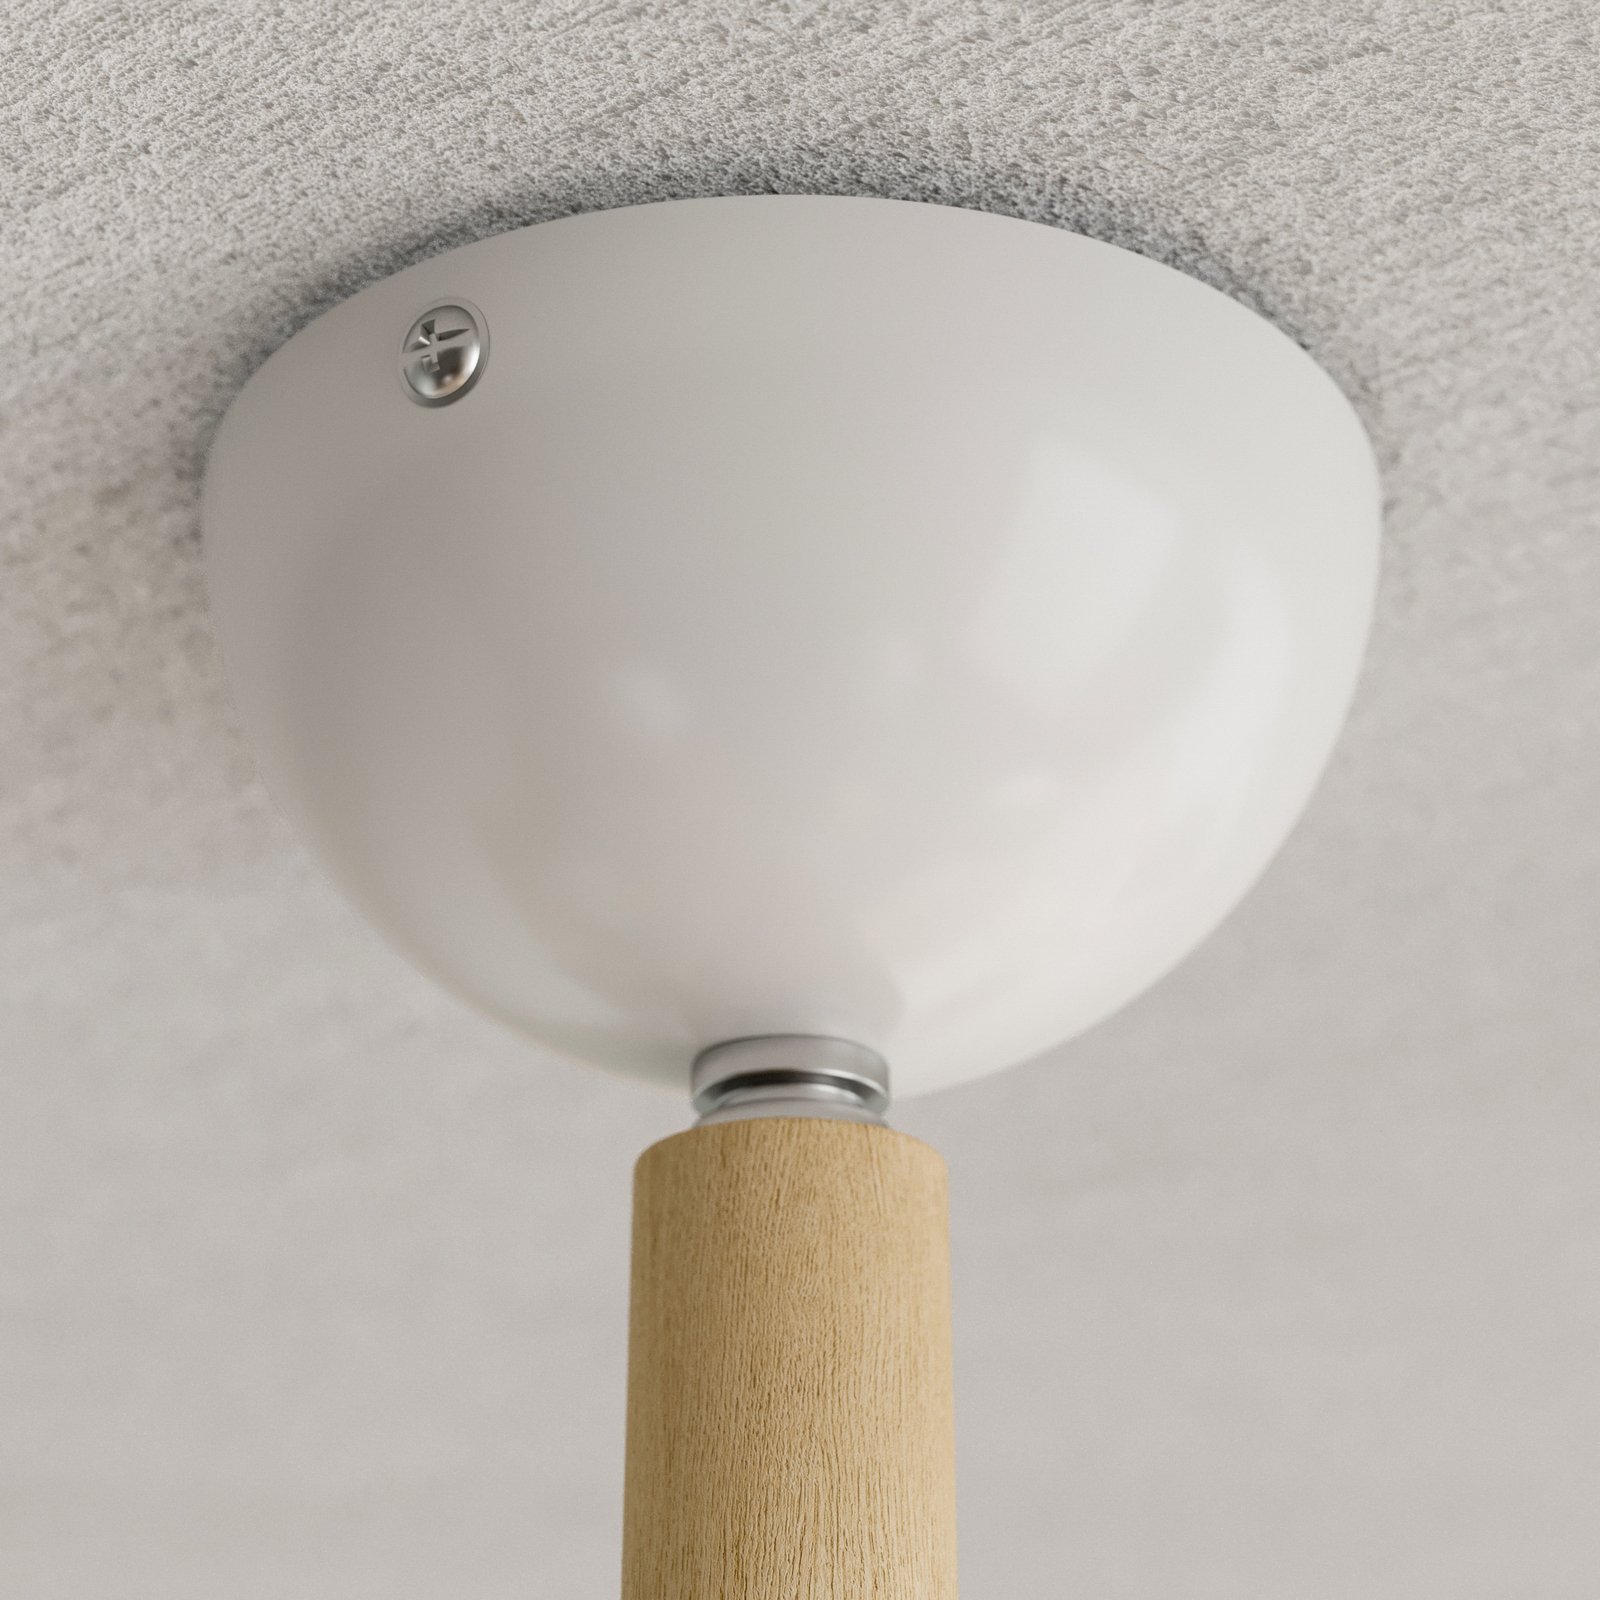 Skansen ceiling lamp 5-bulb adjustable, white